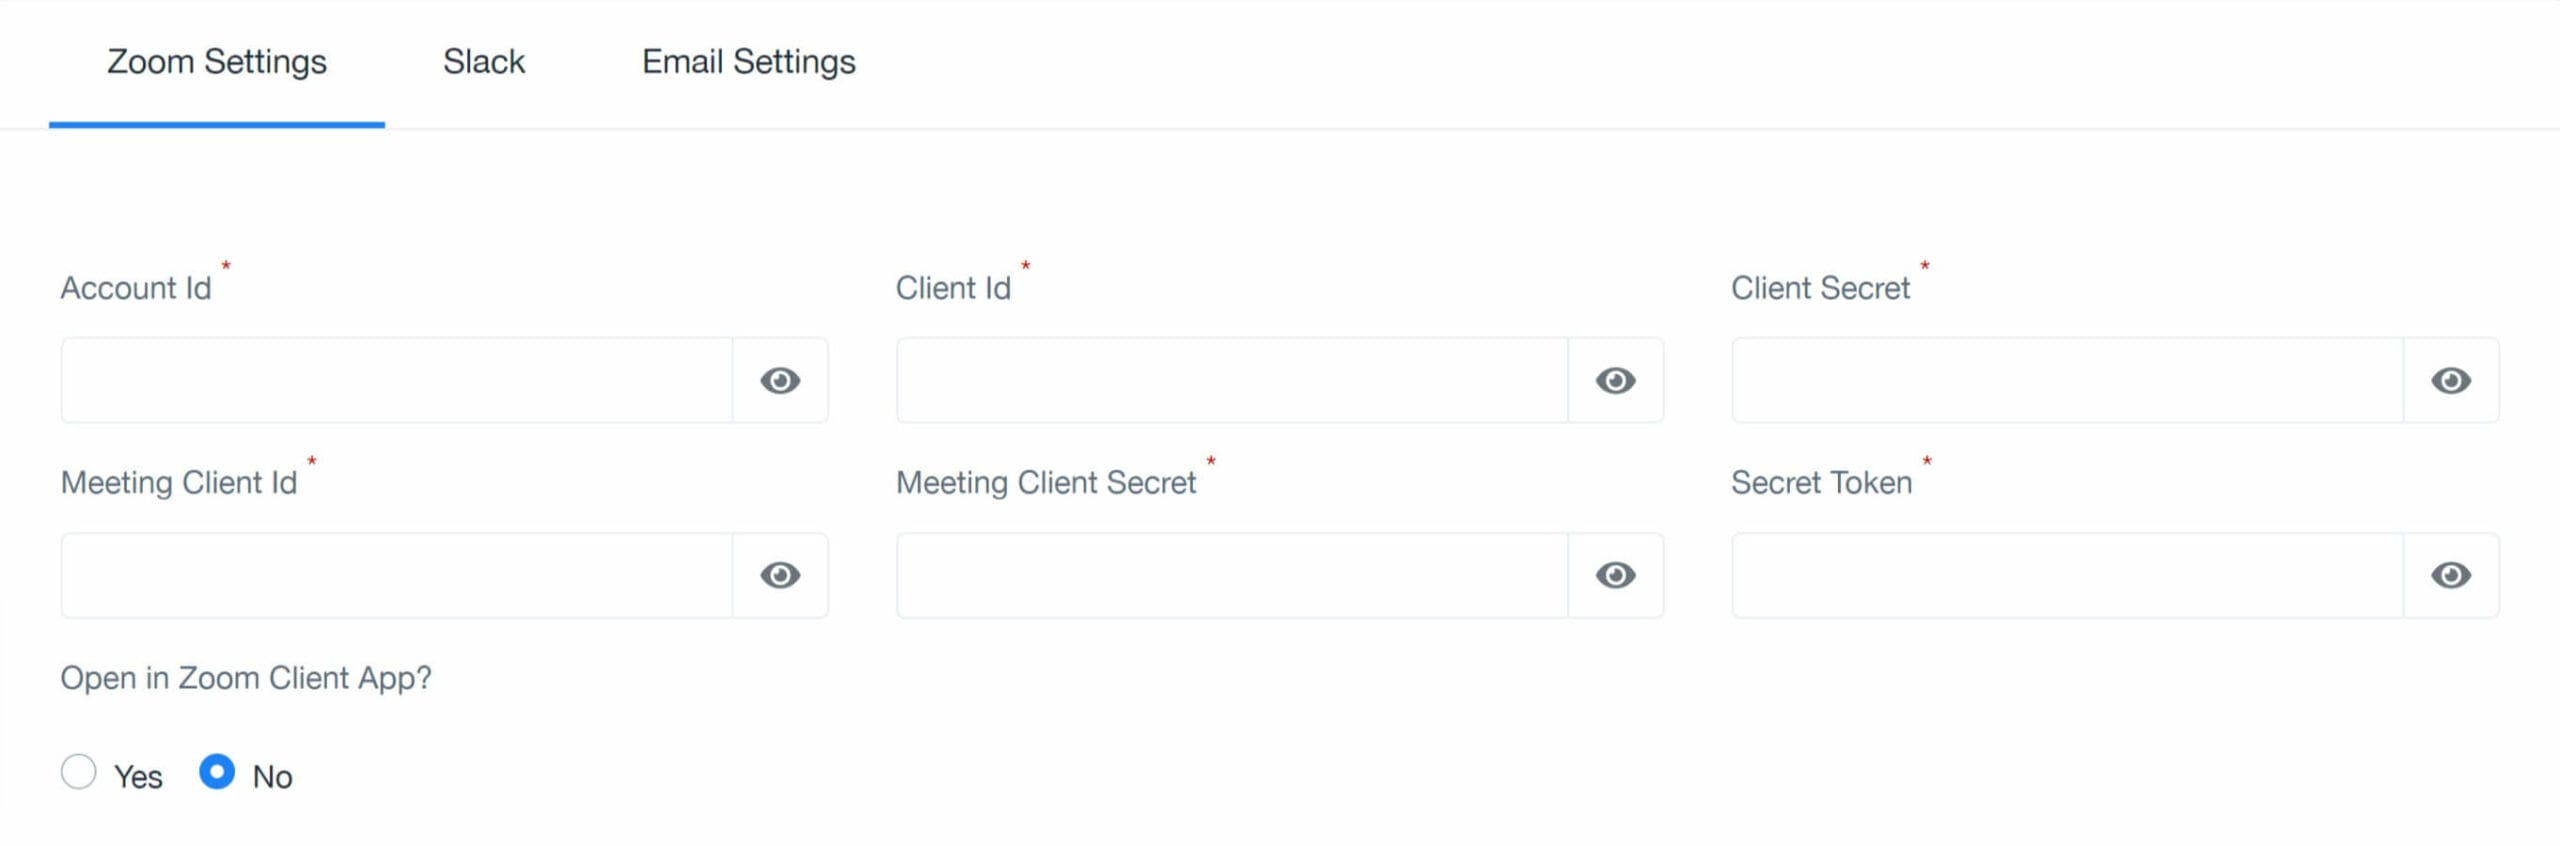 Zoom meetings and Slack notifications – TaskCreator.com